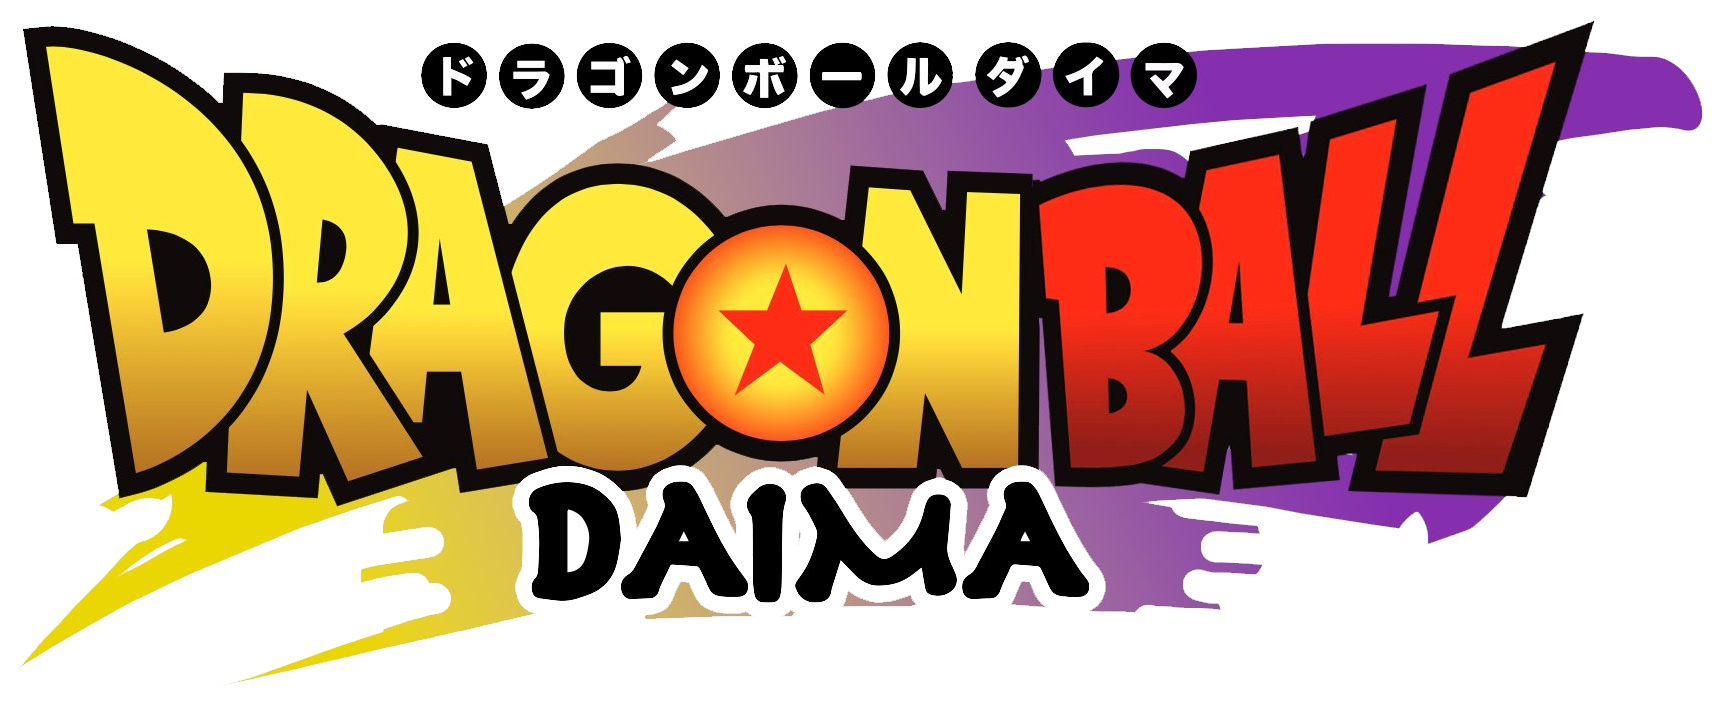 5 coisas que você precisa saber sobre Dragon Ball: Daima - Saiyajin